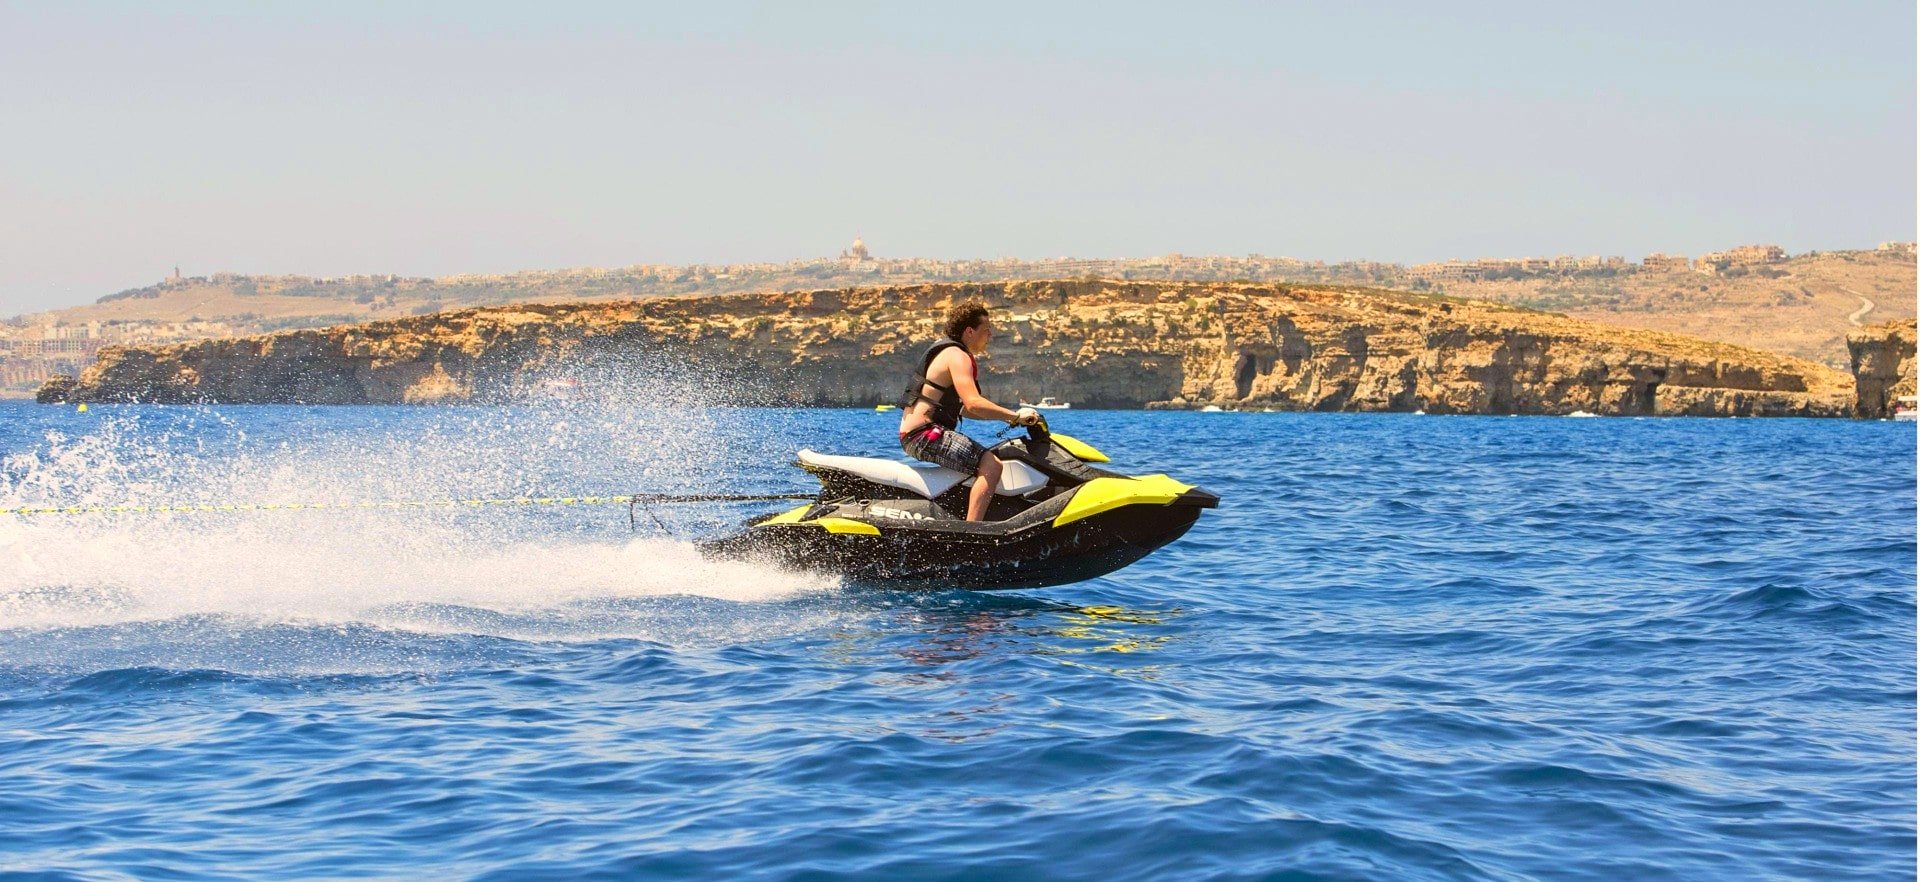 A jet ski speeds through the sea of Malta.